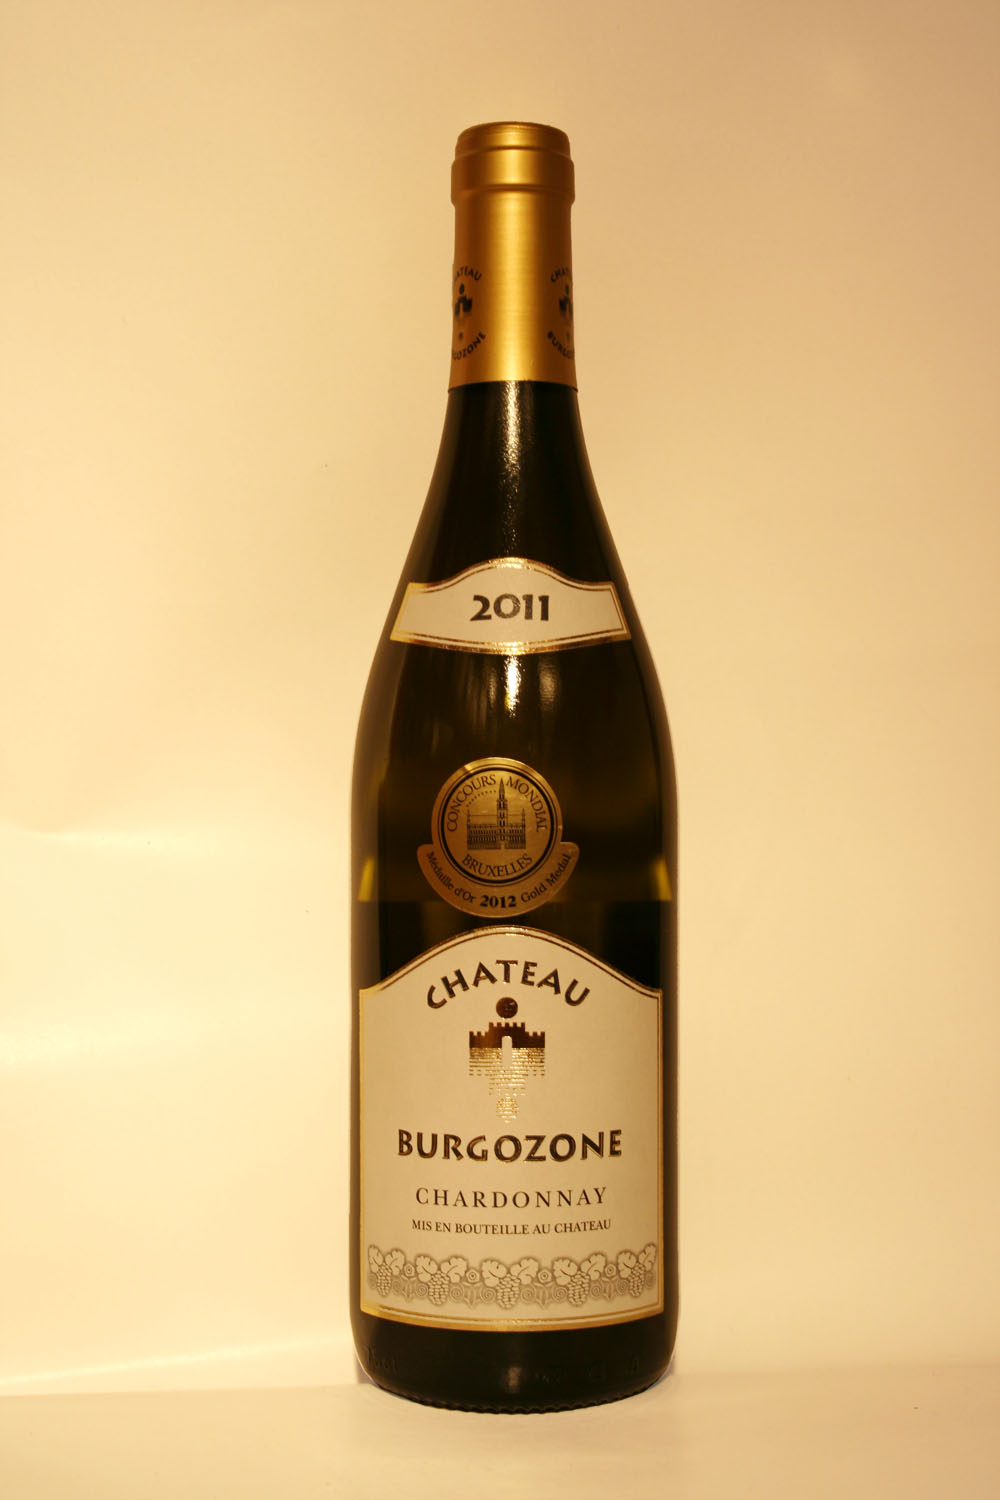 Chateau Burgozone Chardonnay 2011